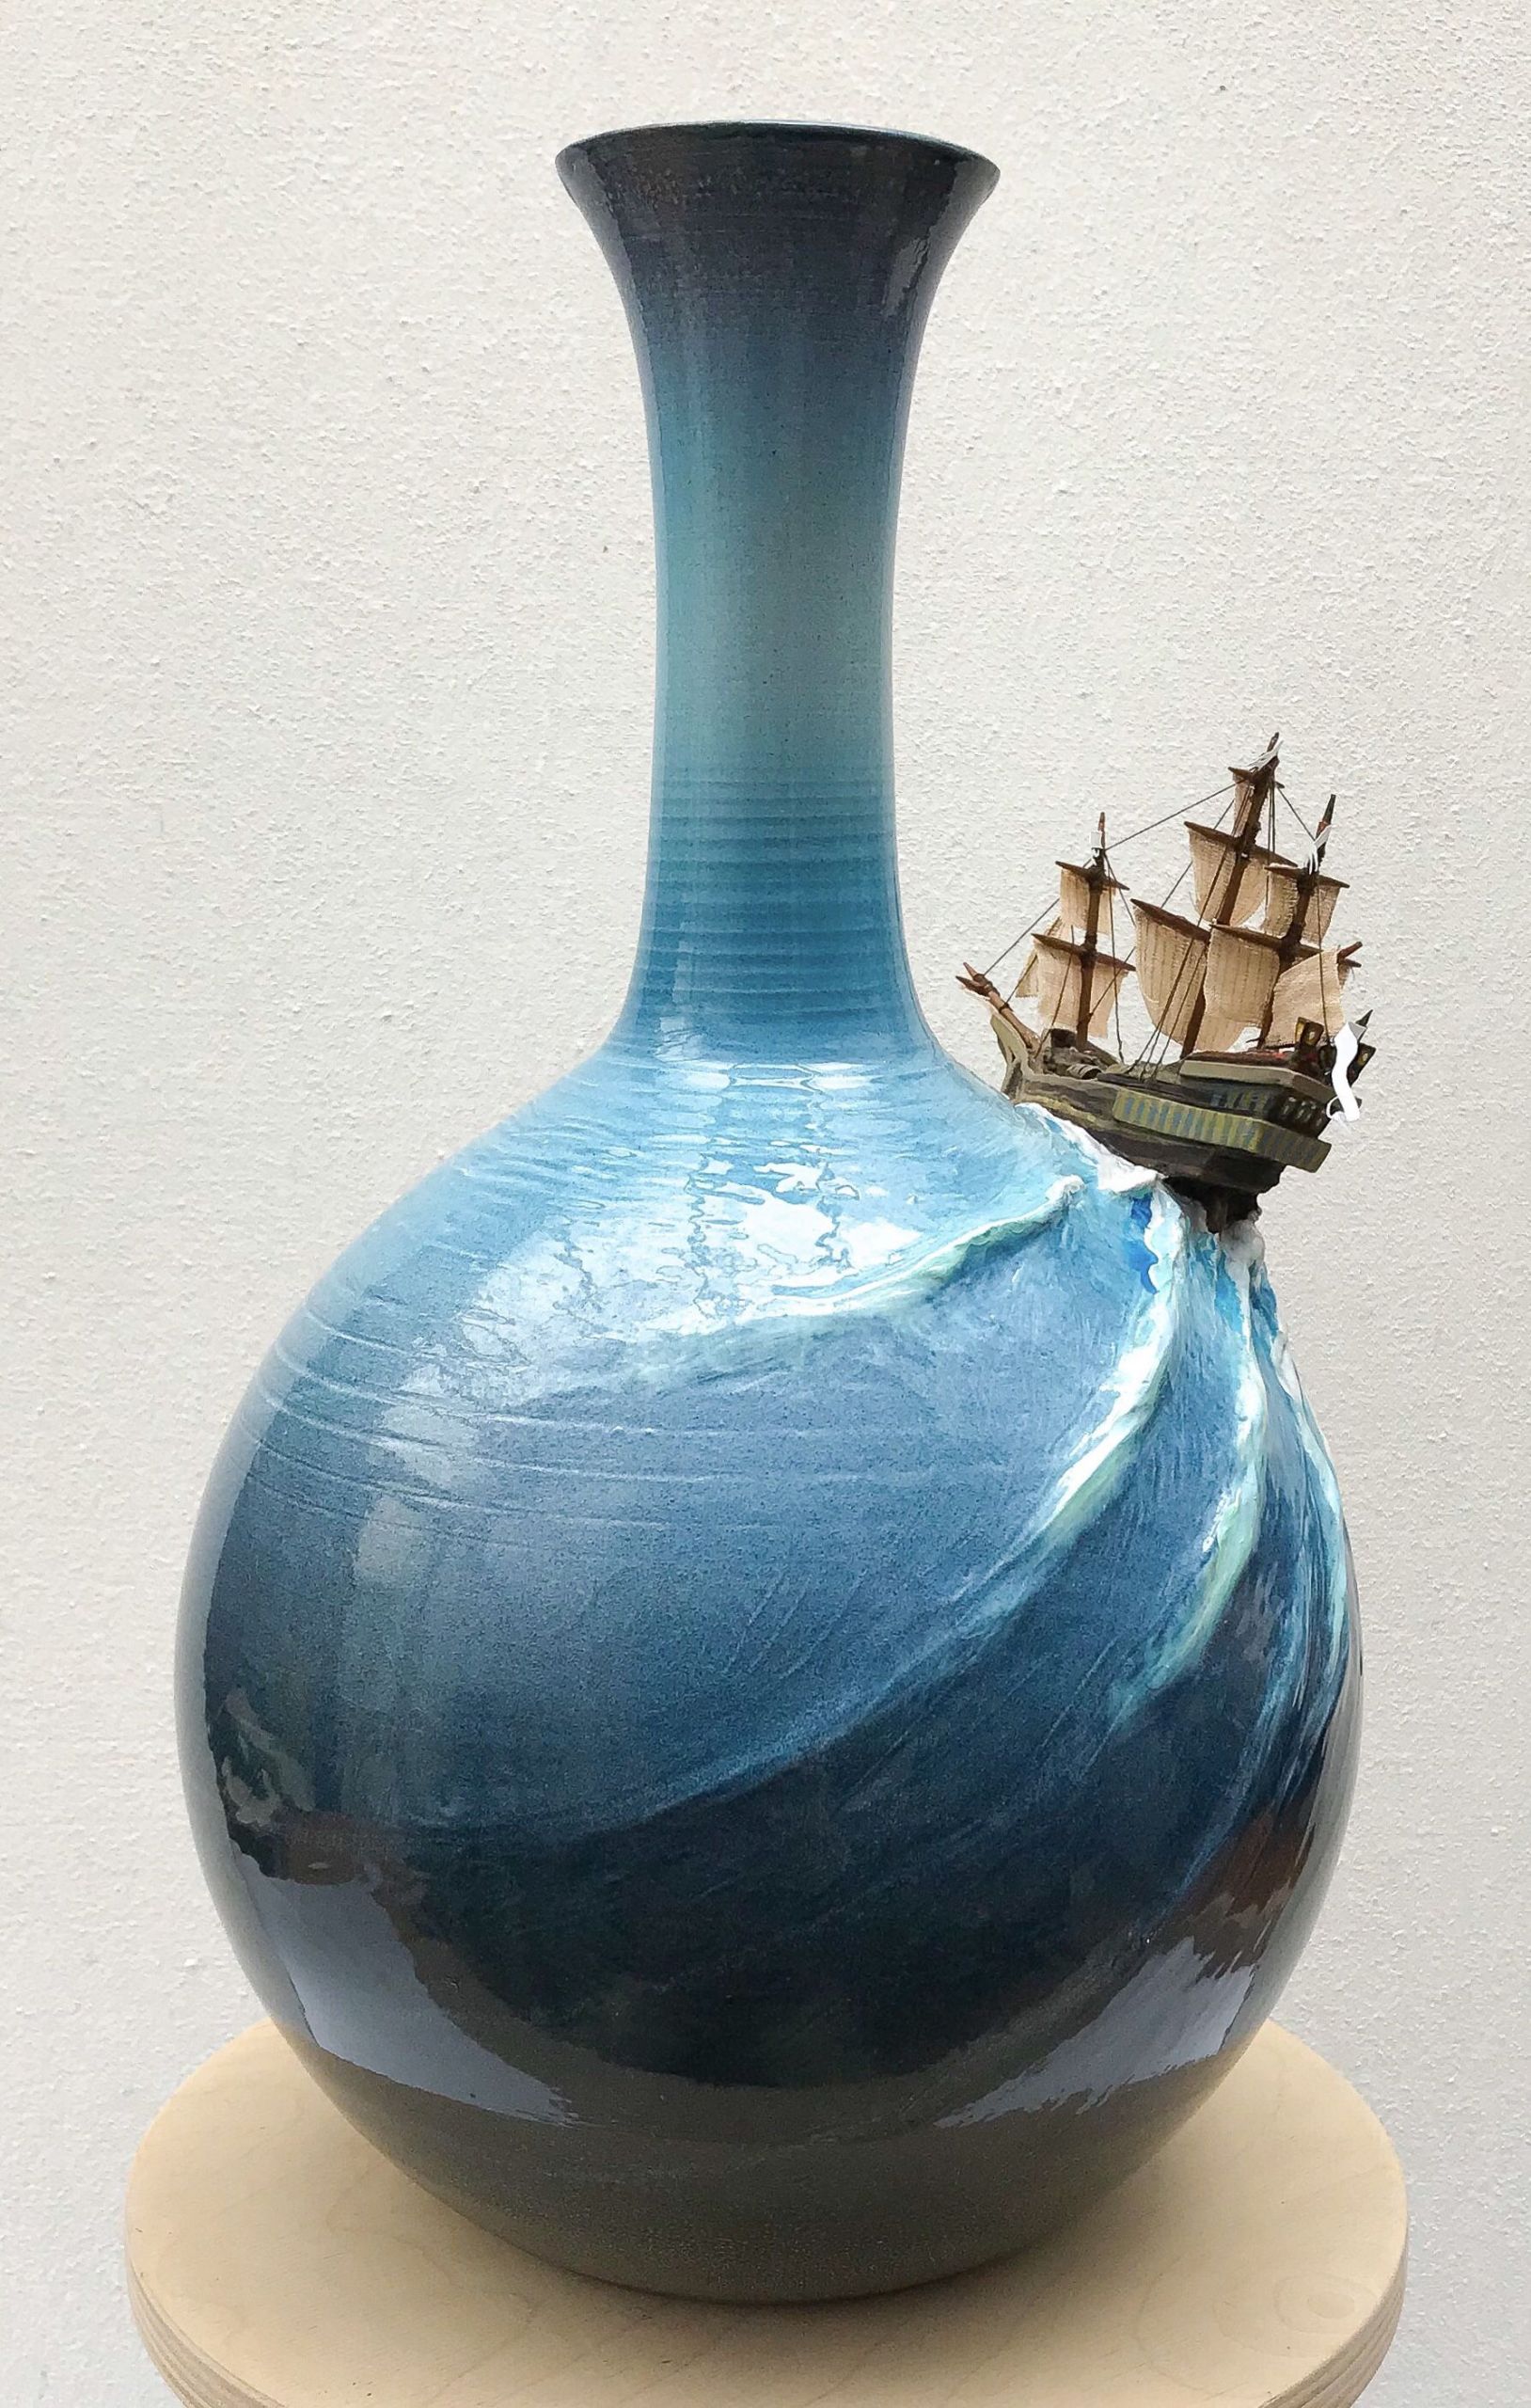 Gartendeko Blau Schön Pin by Arts In Clay On Fantasy Ceramic Art In 2019